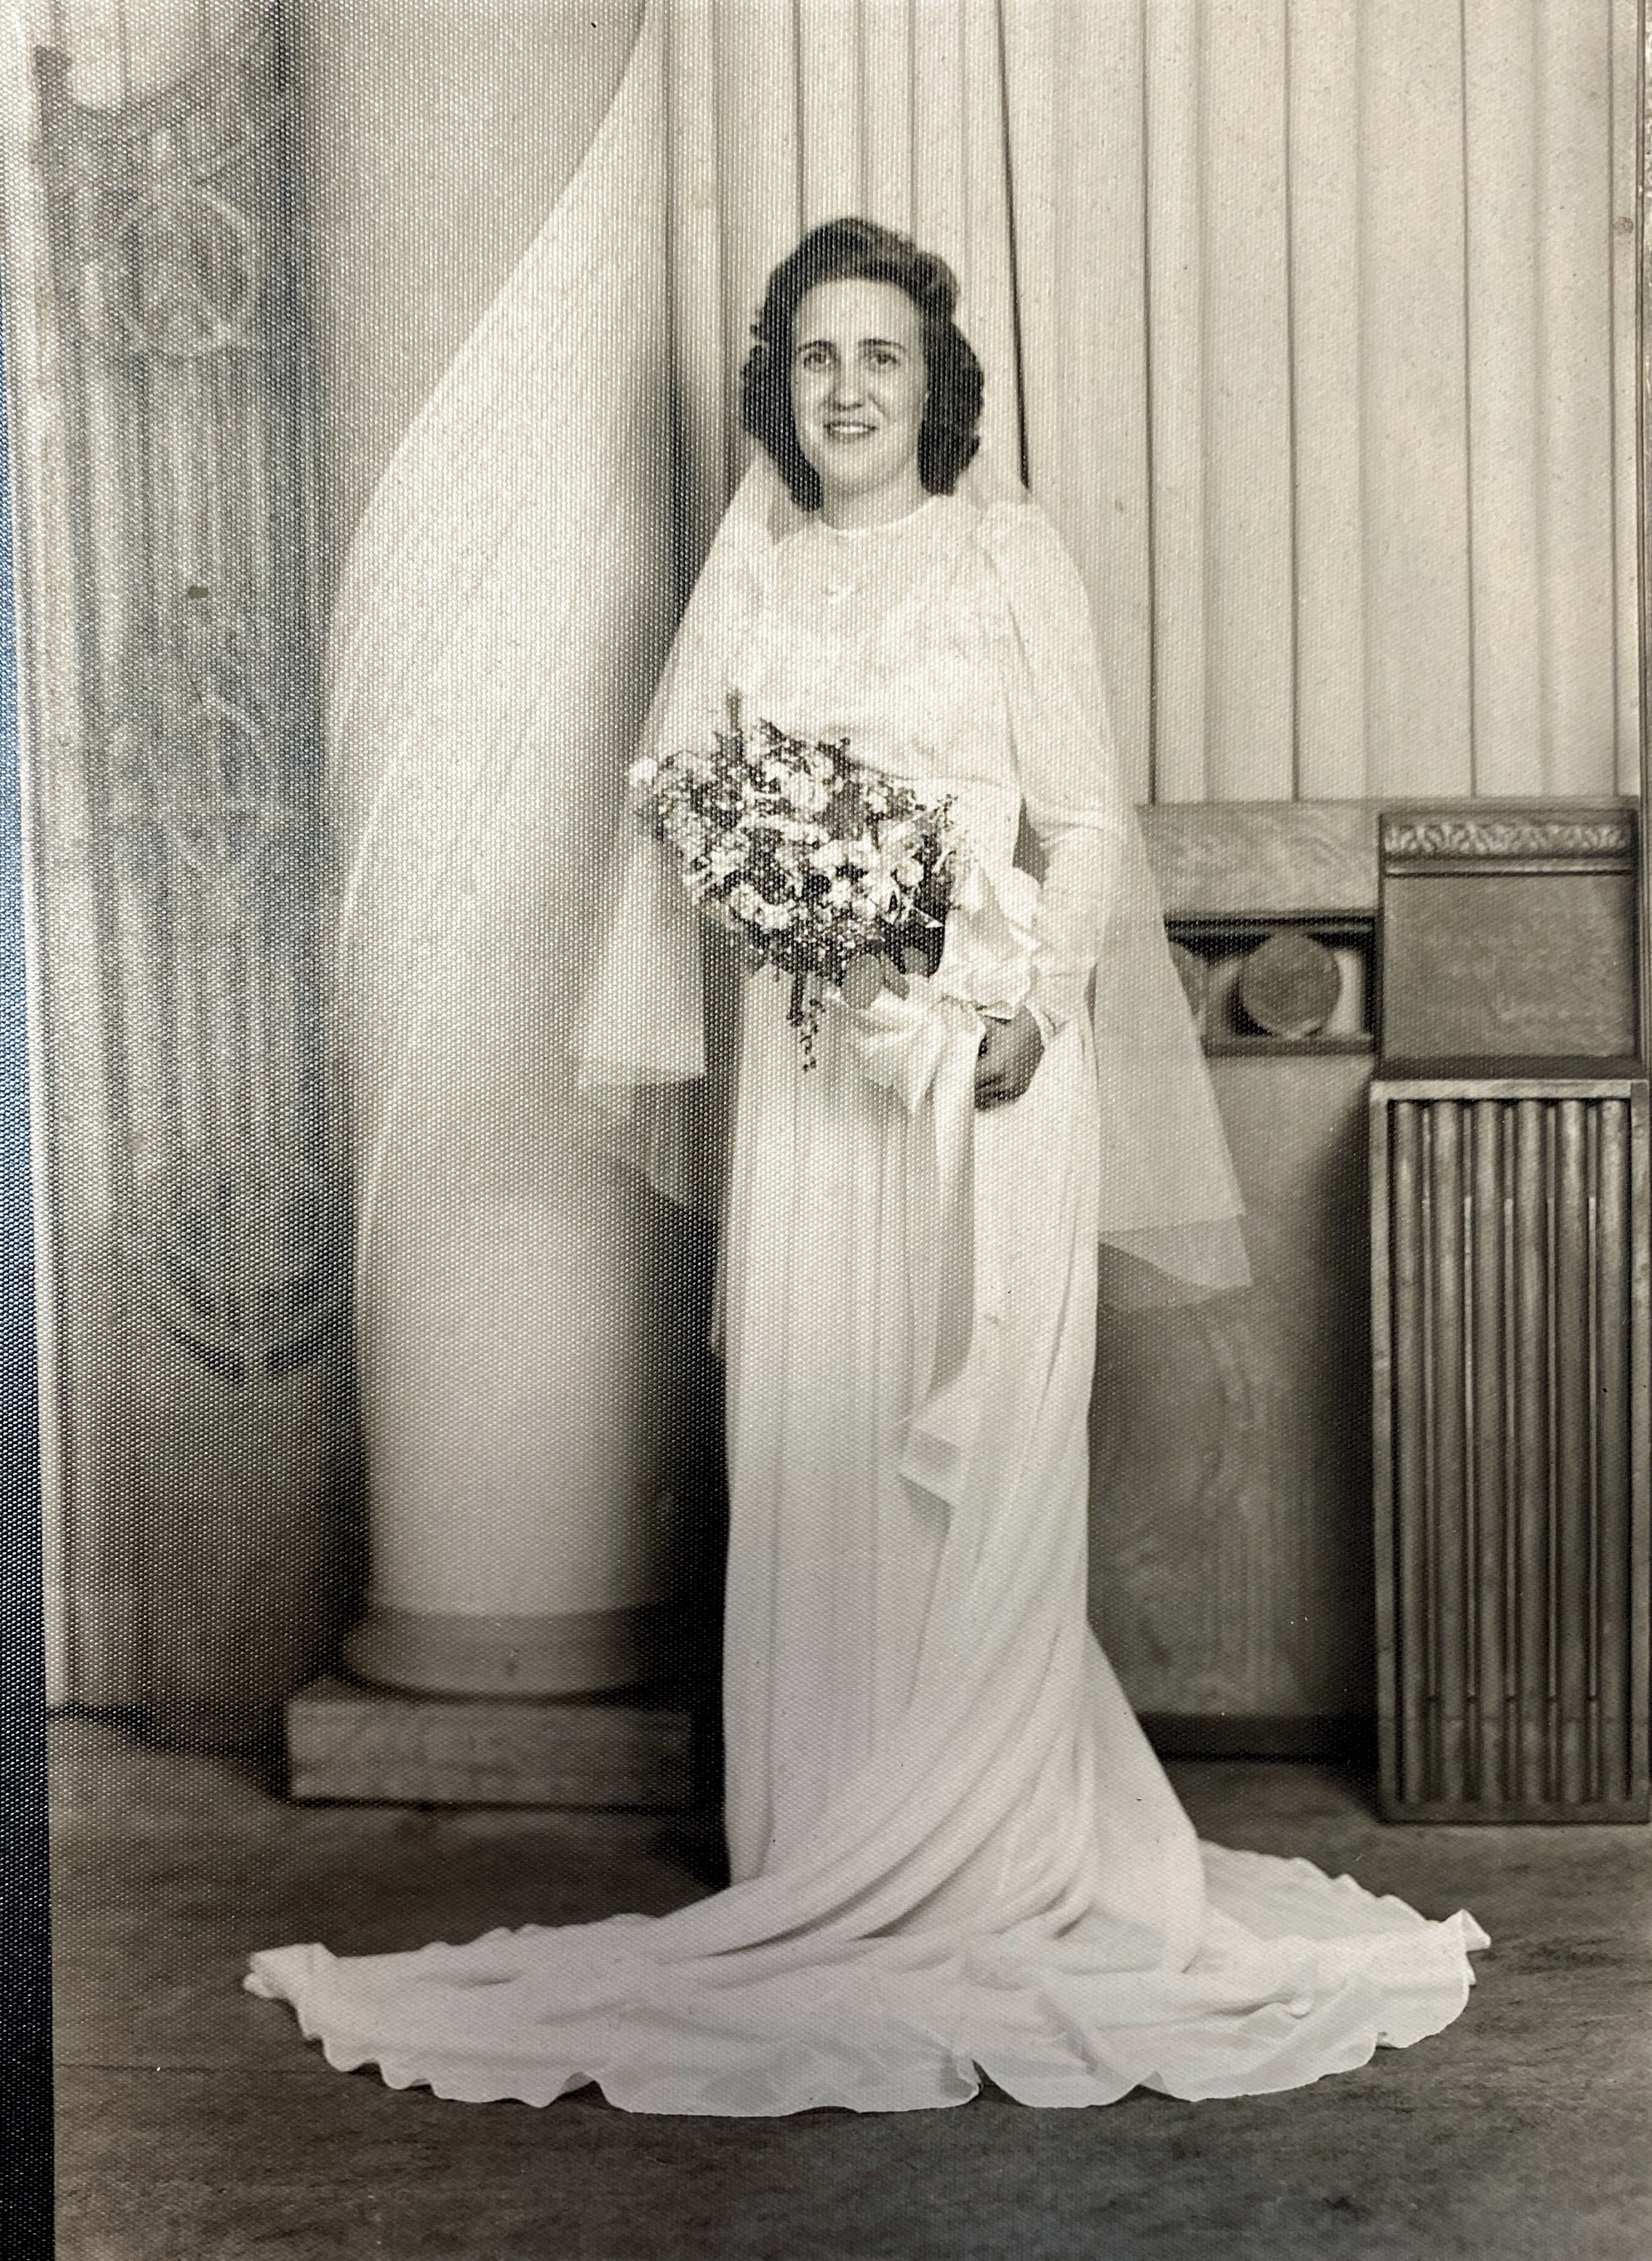 Wedding Day July 14, 1944